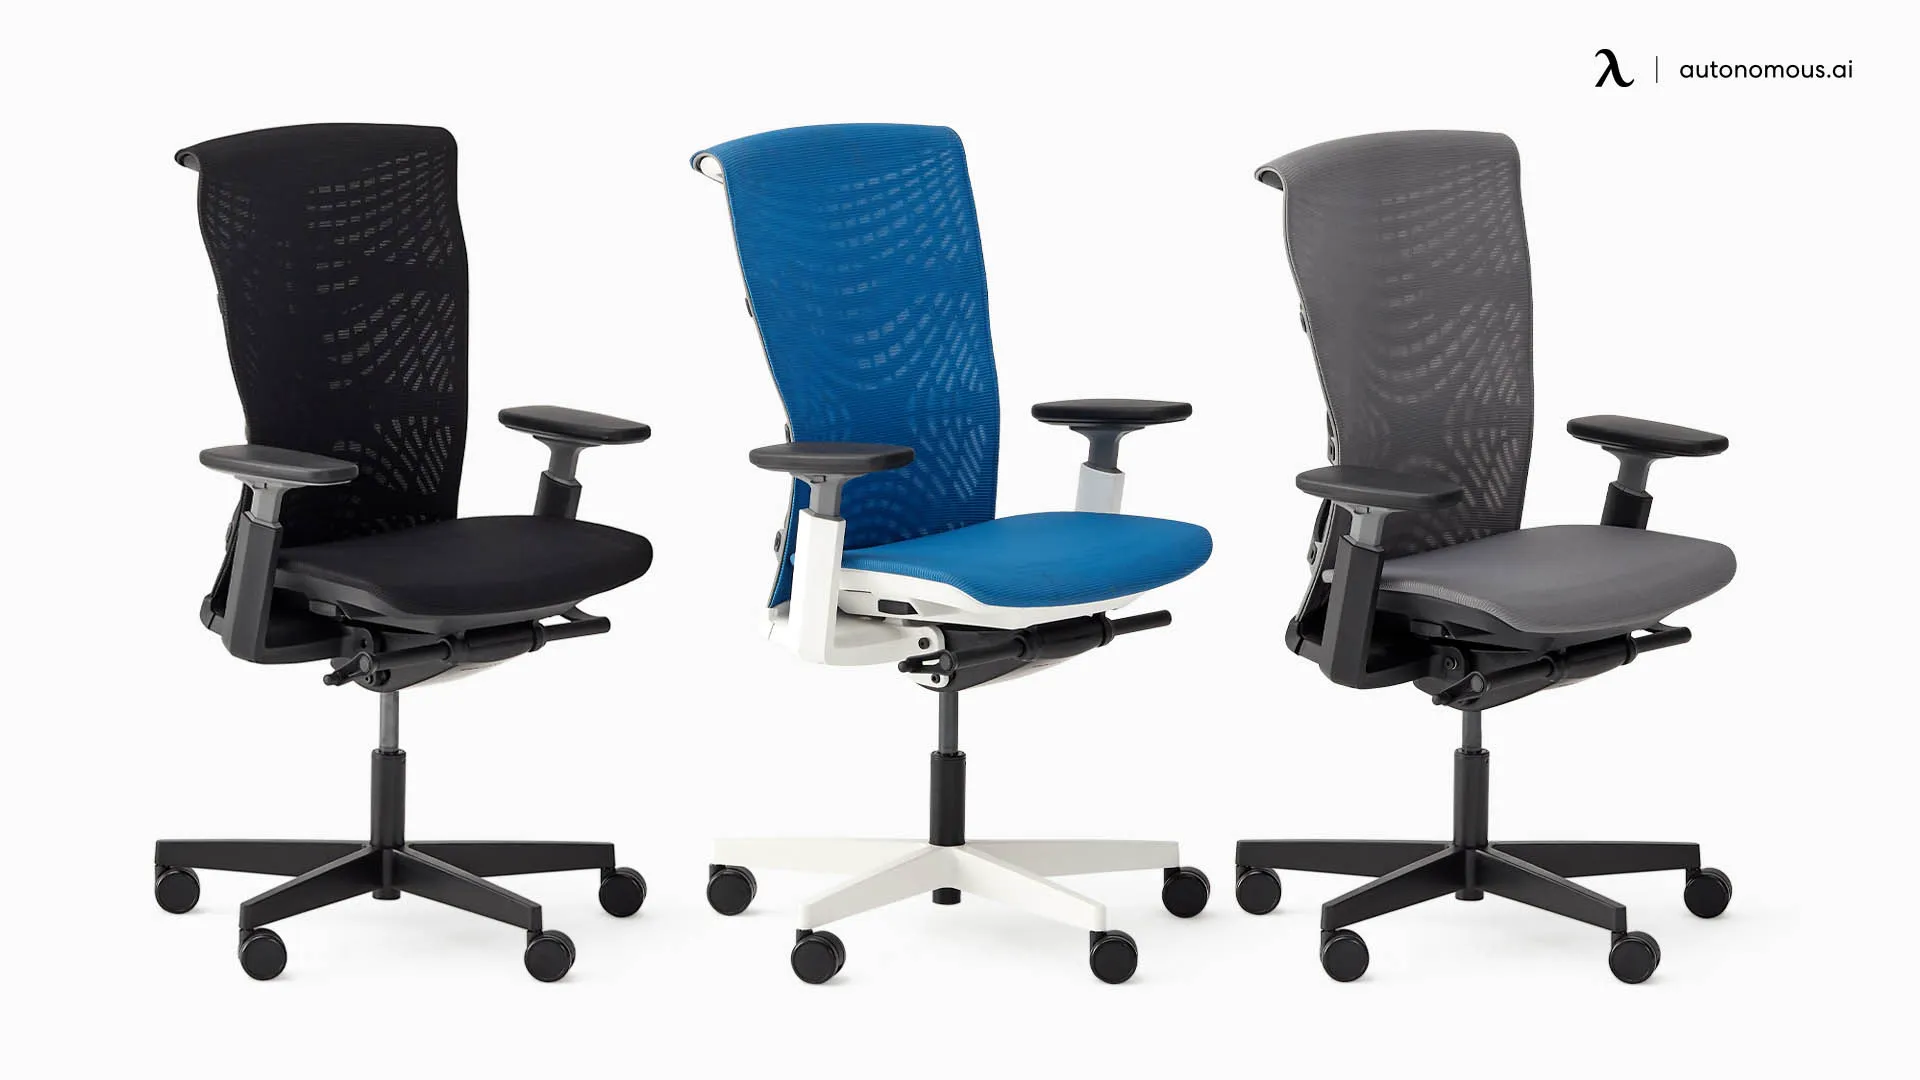 ErgoChair Pro+ by Autonomous chair design for office